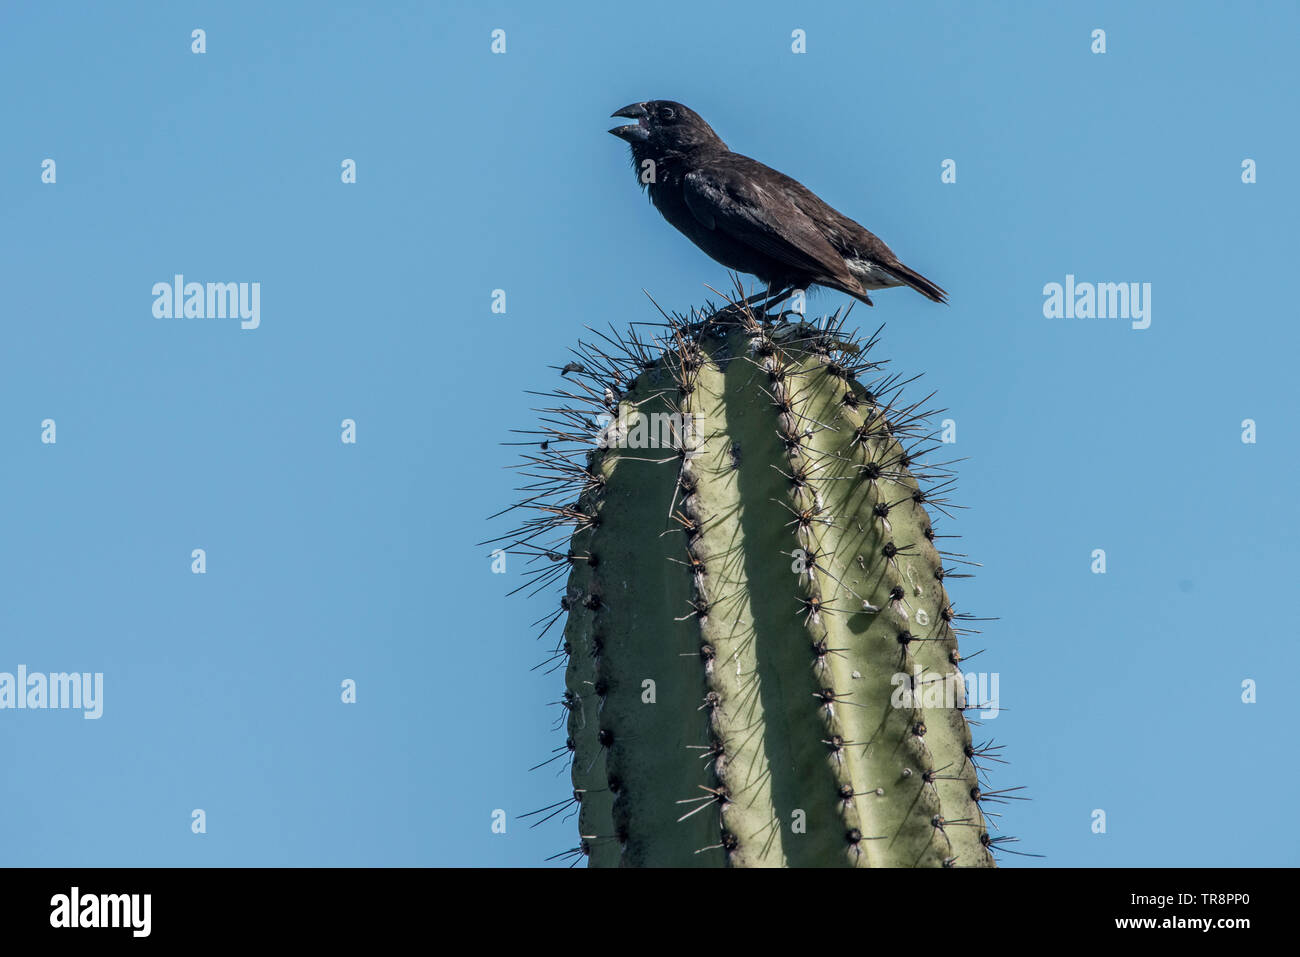 Cactus mâle (Geospiza scandens) finch chante du haut d'un cactus. Célèbre pour être l'un des organismes à l'étude Darwins qui ont inspiré sa théorie de l'évolution. Banque D'Images